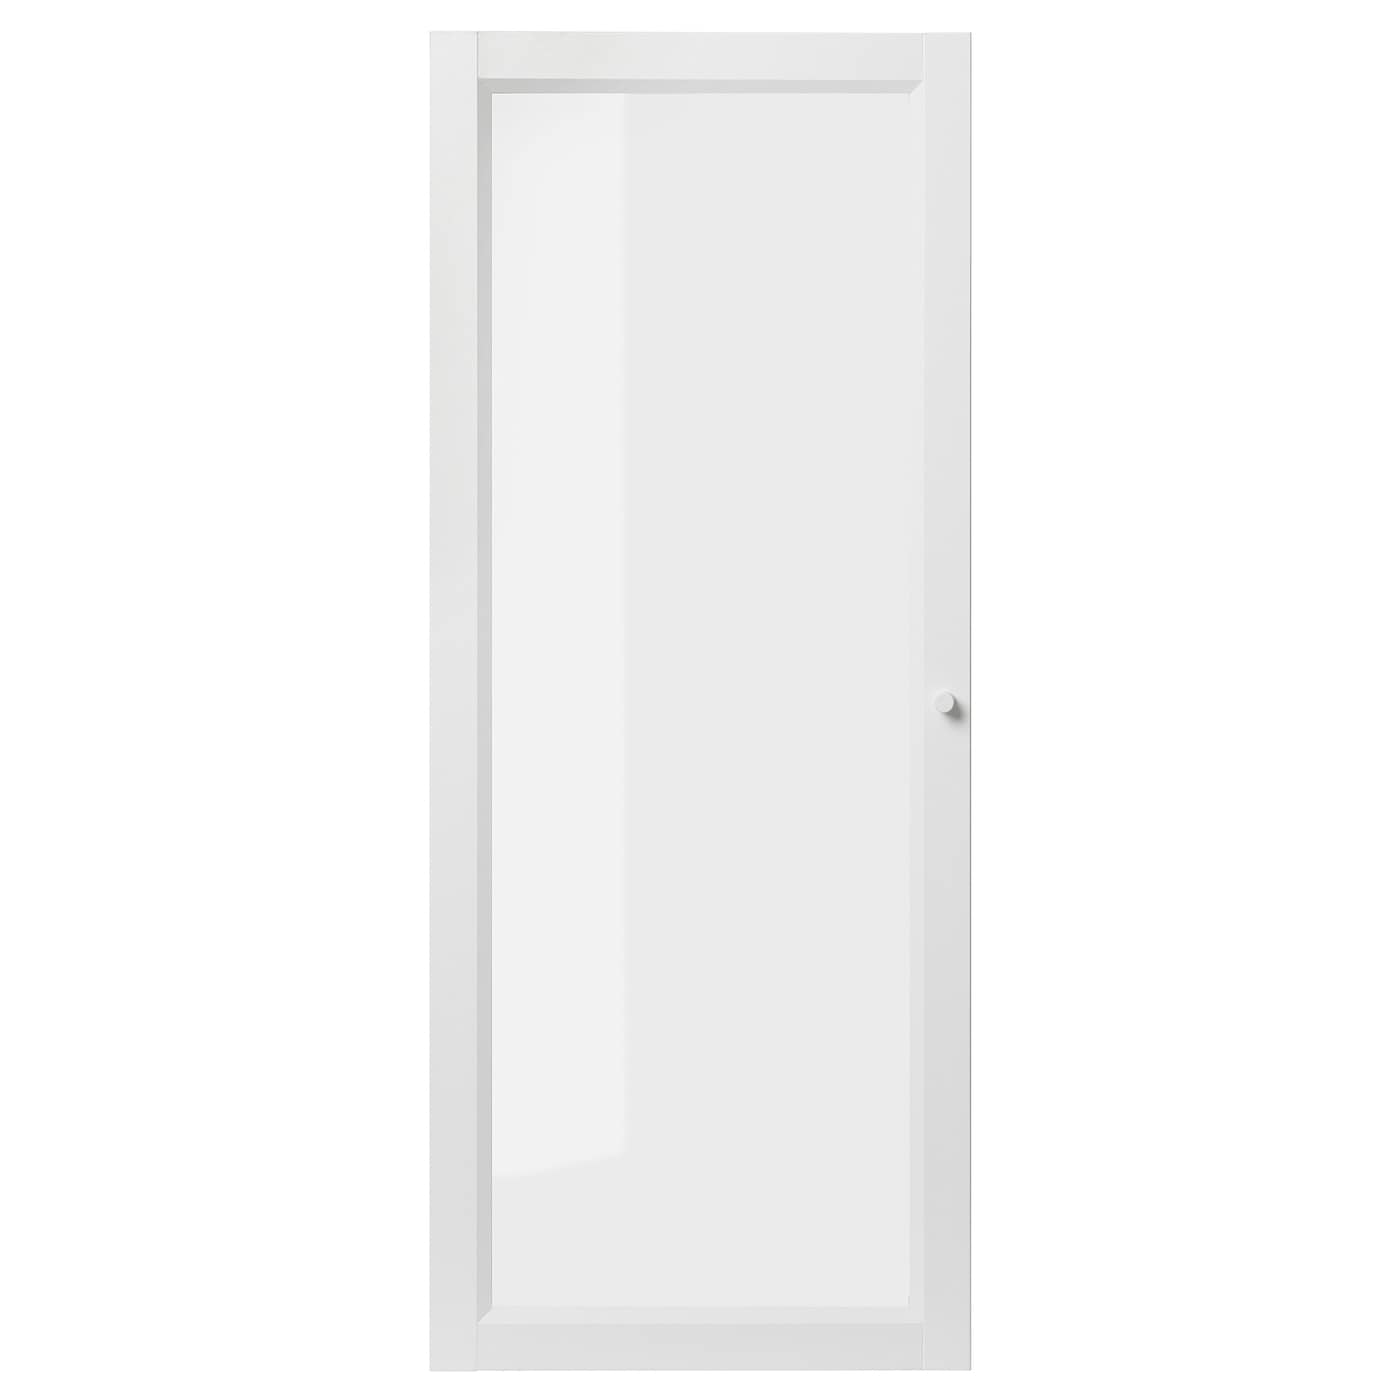 Дверца - OXBERG  IKEA/ ОКСБЕРГ ИКЕА,  40x97 см, белый